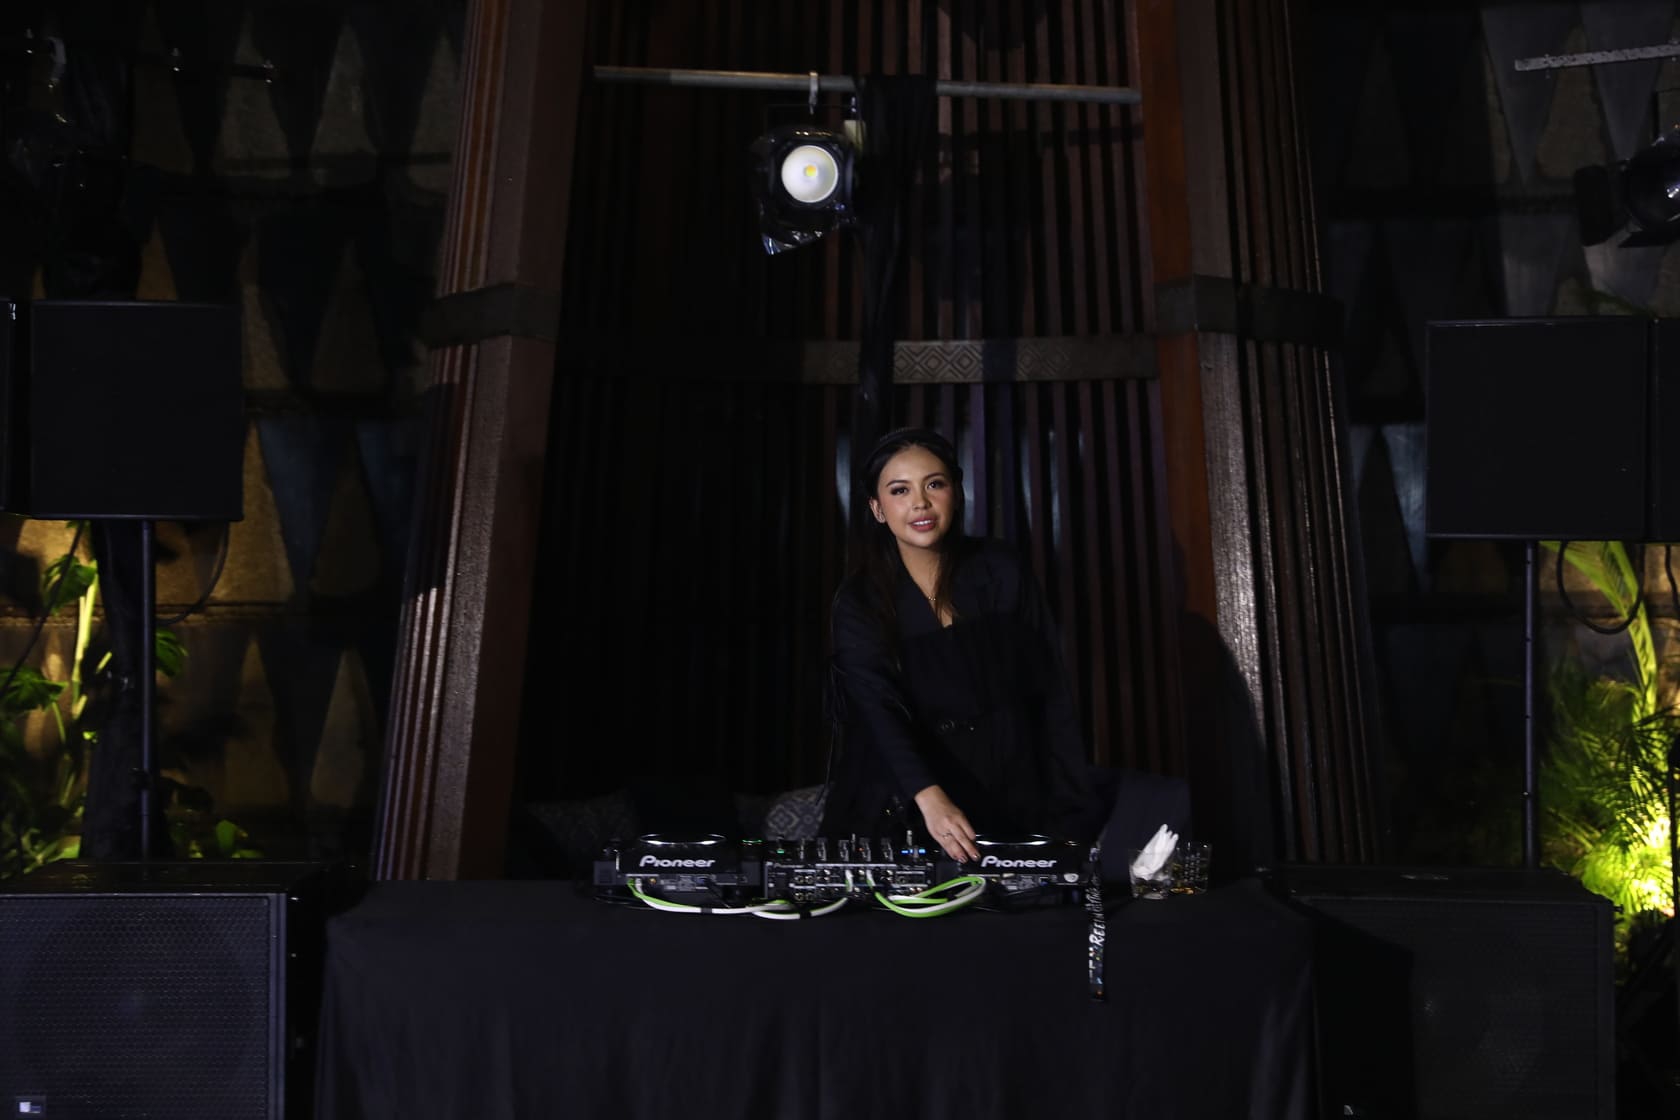 DJ Sarah